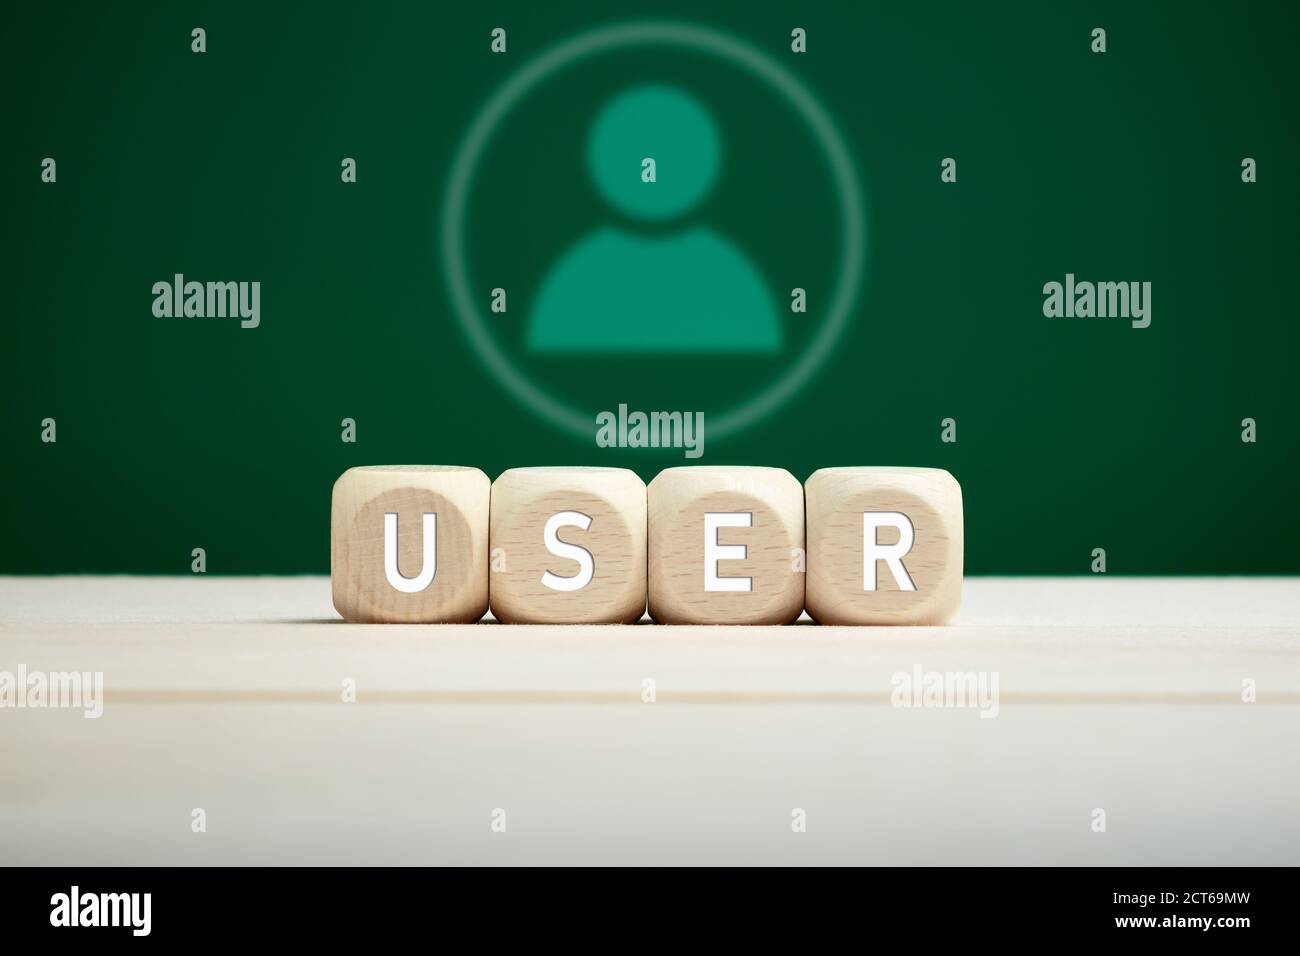 Le mot utilisateur sur des blocs de bois avec une icône utilisateur sur fond vert. Technologie, communication ou concept d'utilisateur d'Internet. Banque D'Images